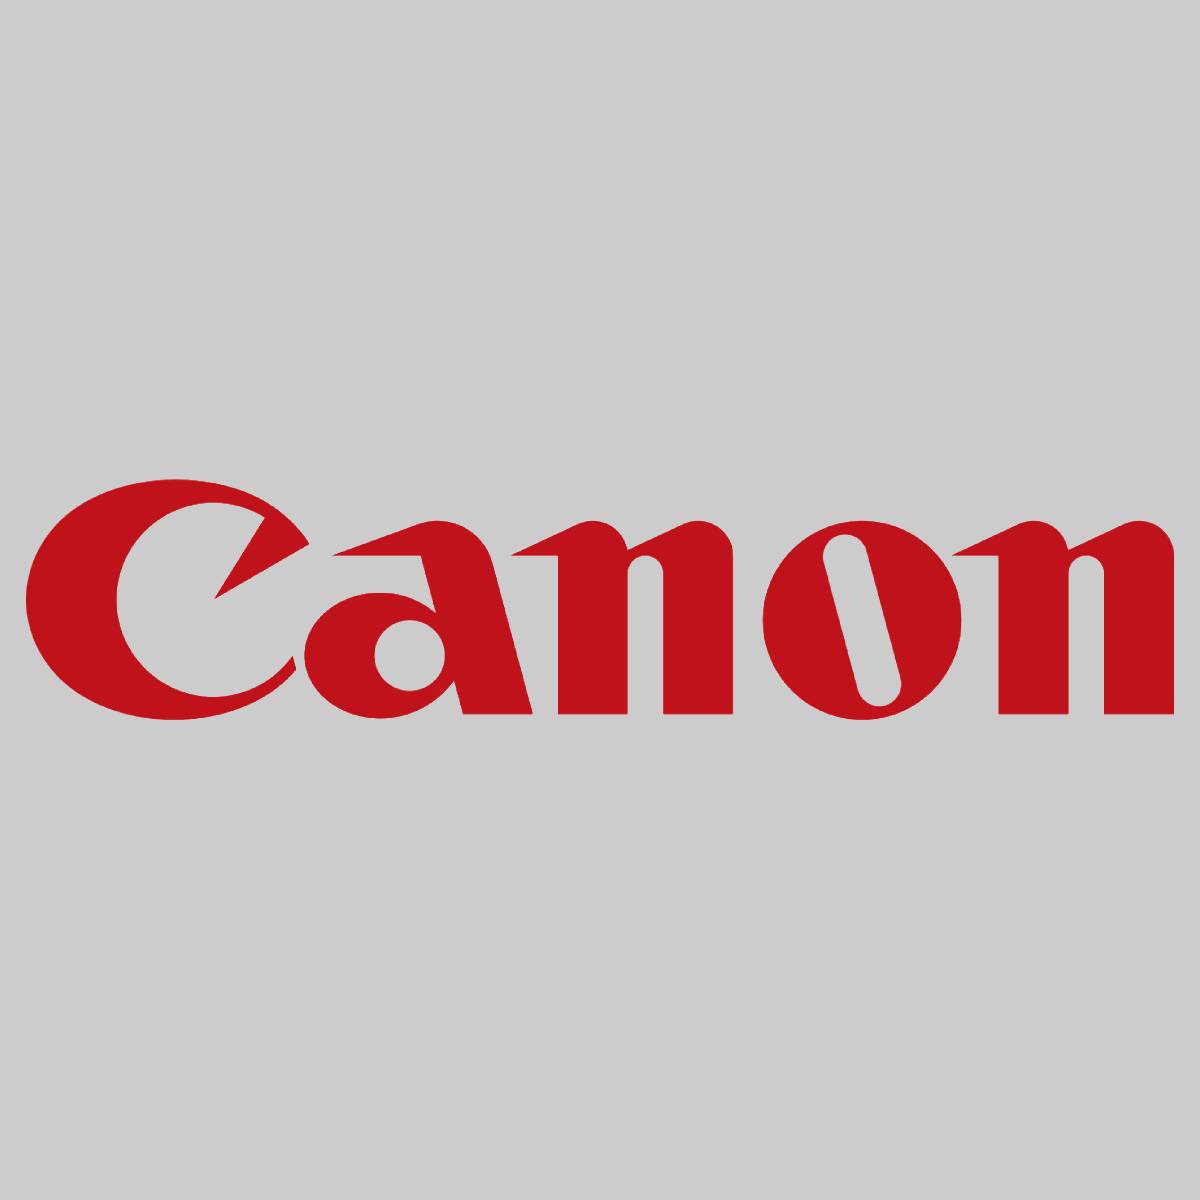 "Genuine Canon Fuser Heater Roller FC7-0932-000 for ImagePress C1 C1+ C1+II